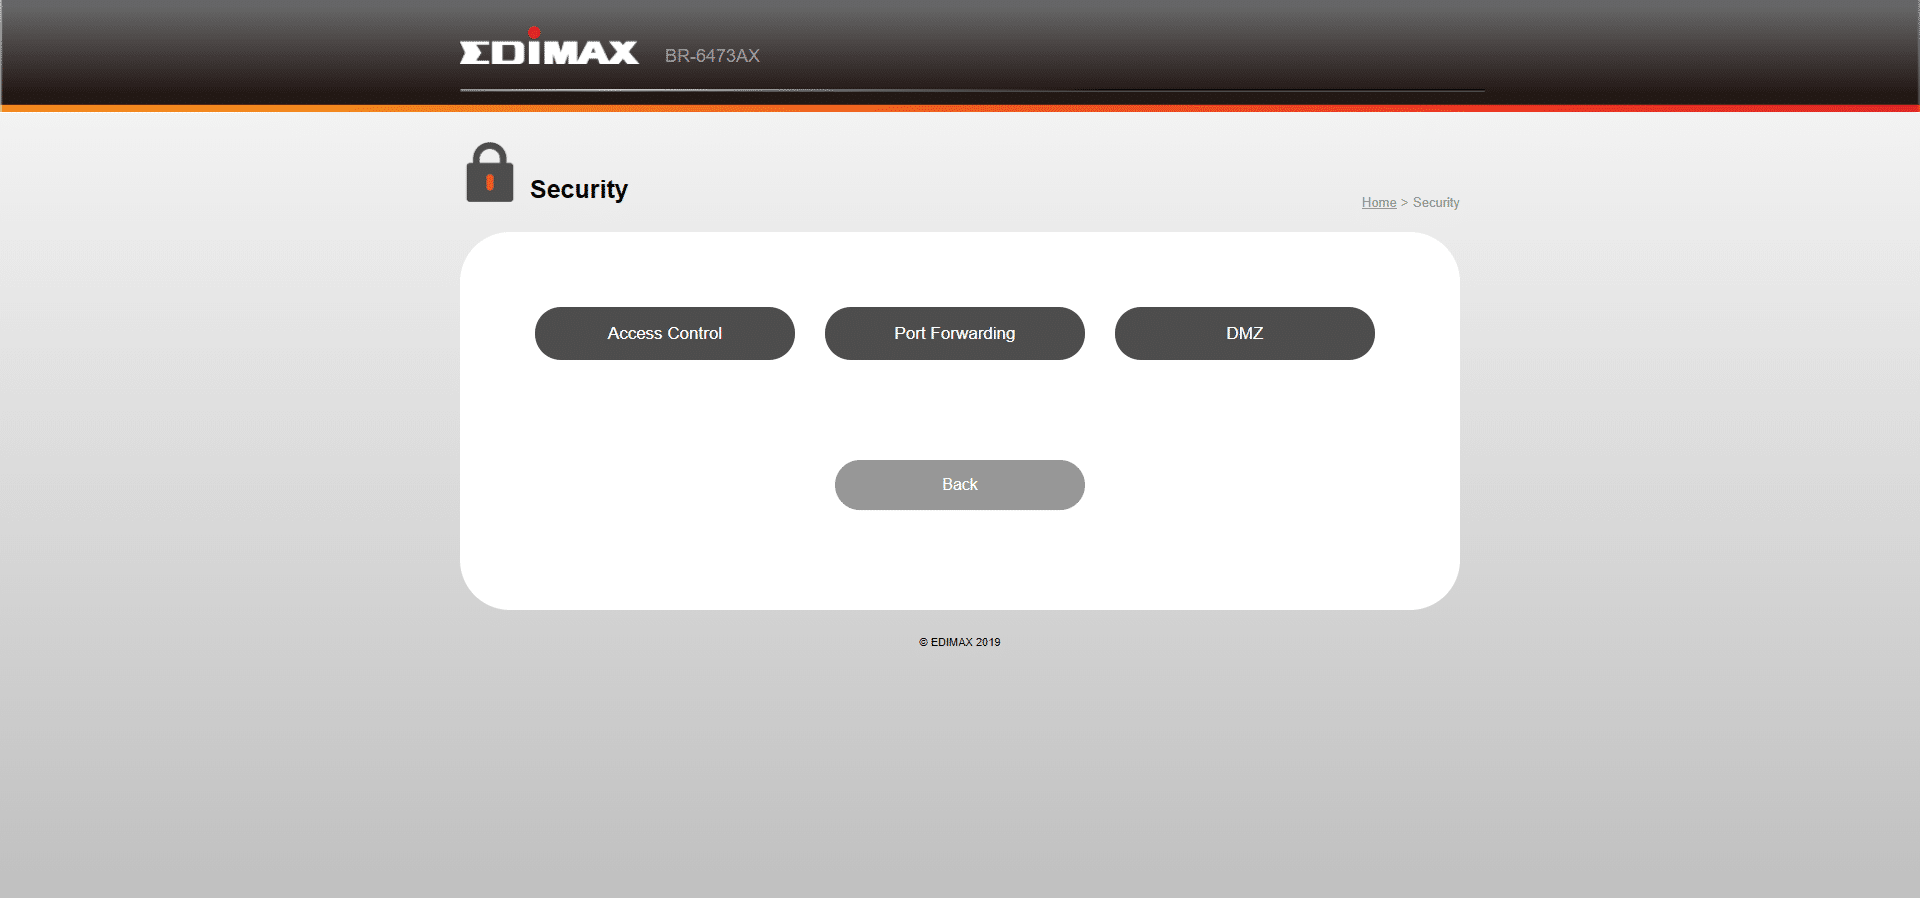 edimax ax3000 ustawienia panel administracyjny (11)